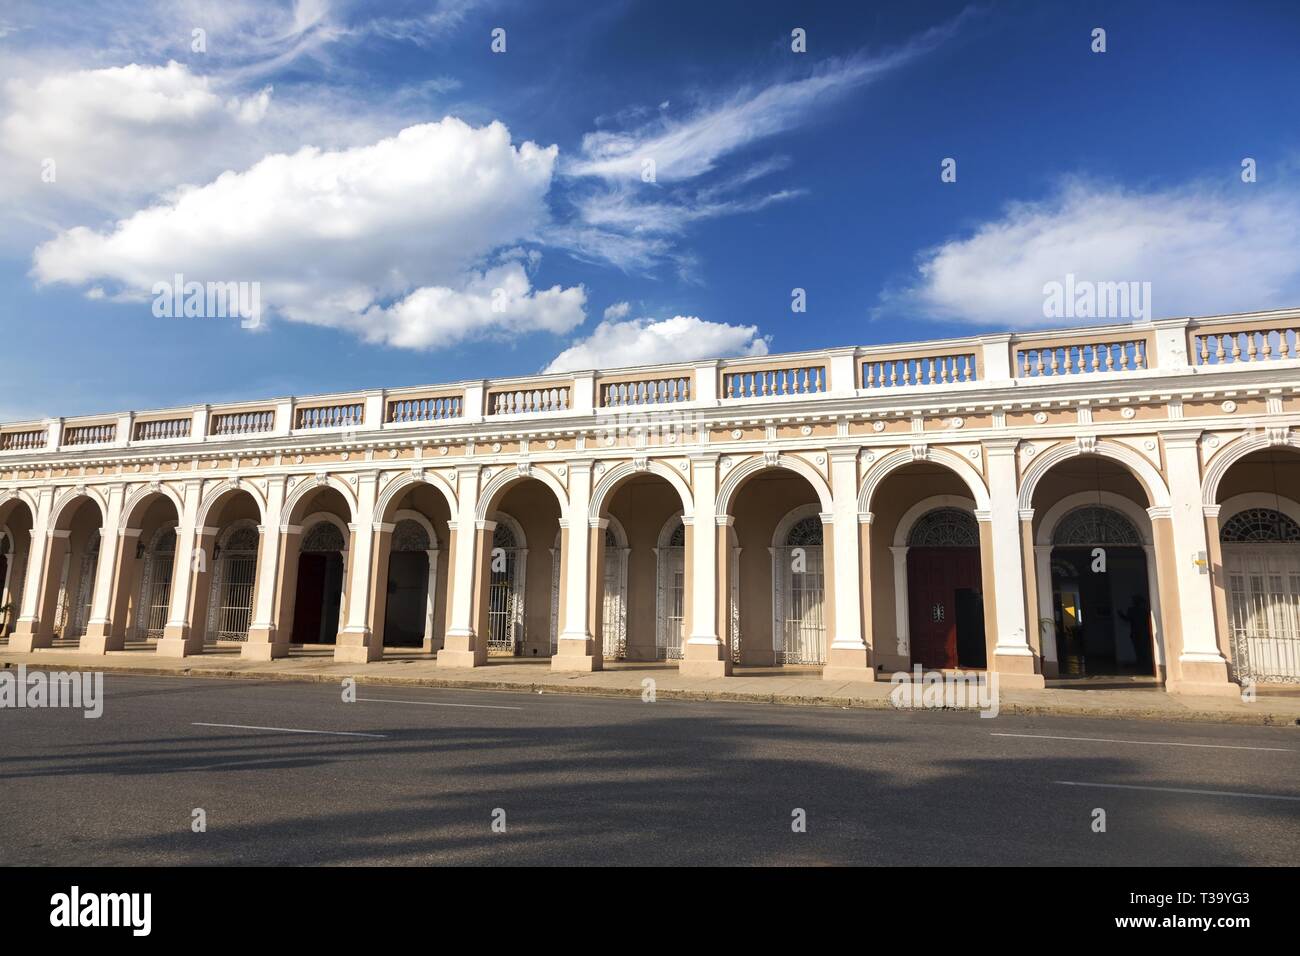 Architettura coloniale spagnola con archi in pietra e skyline blu sulle strade della città di Cienfuegos, Cuba Foto Stock